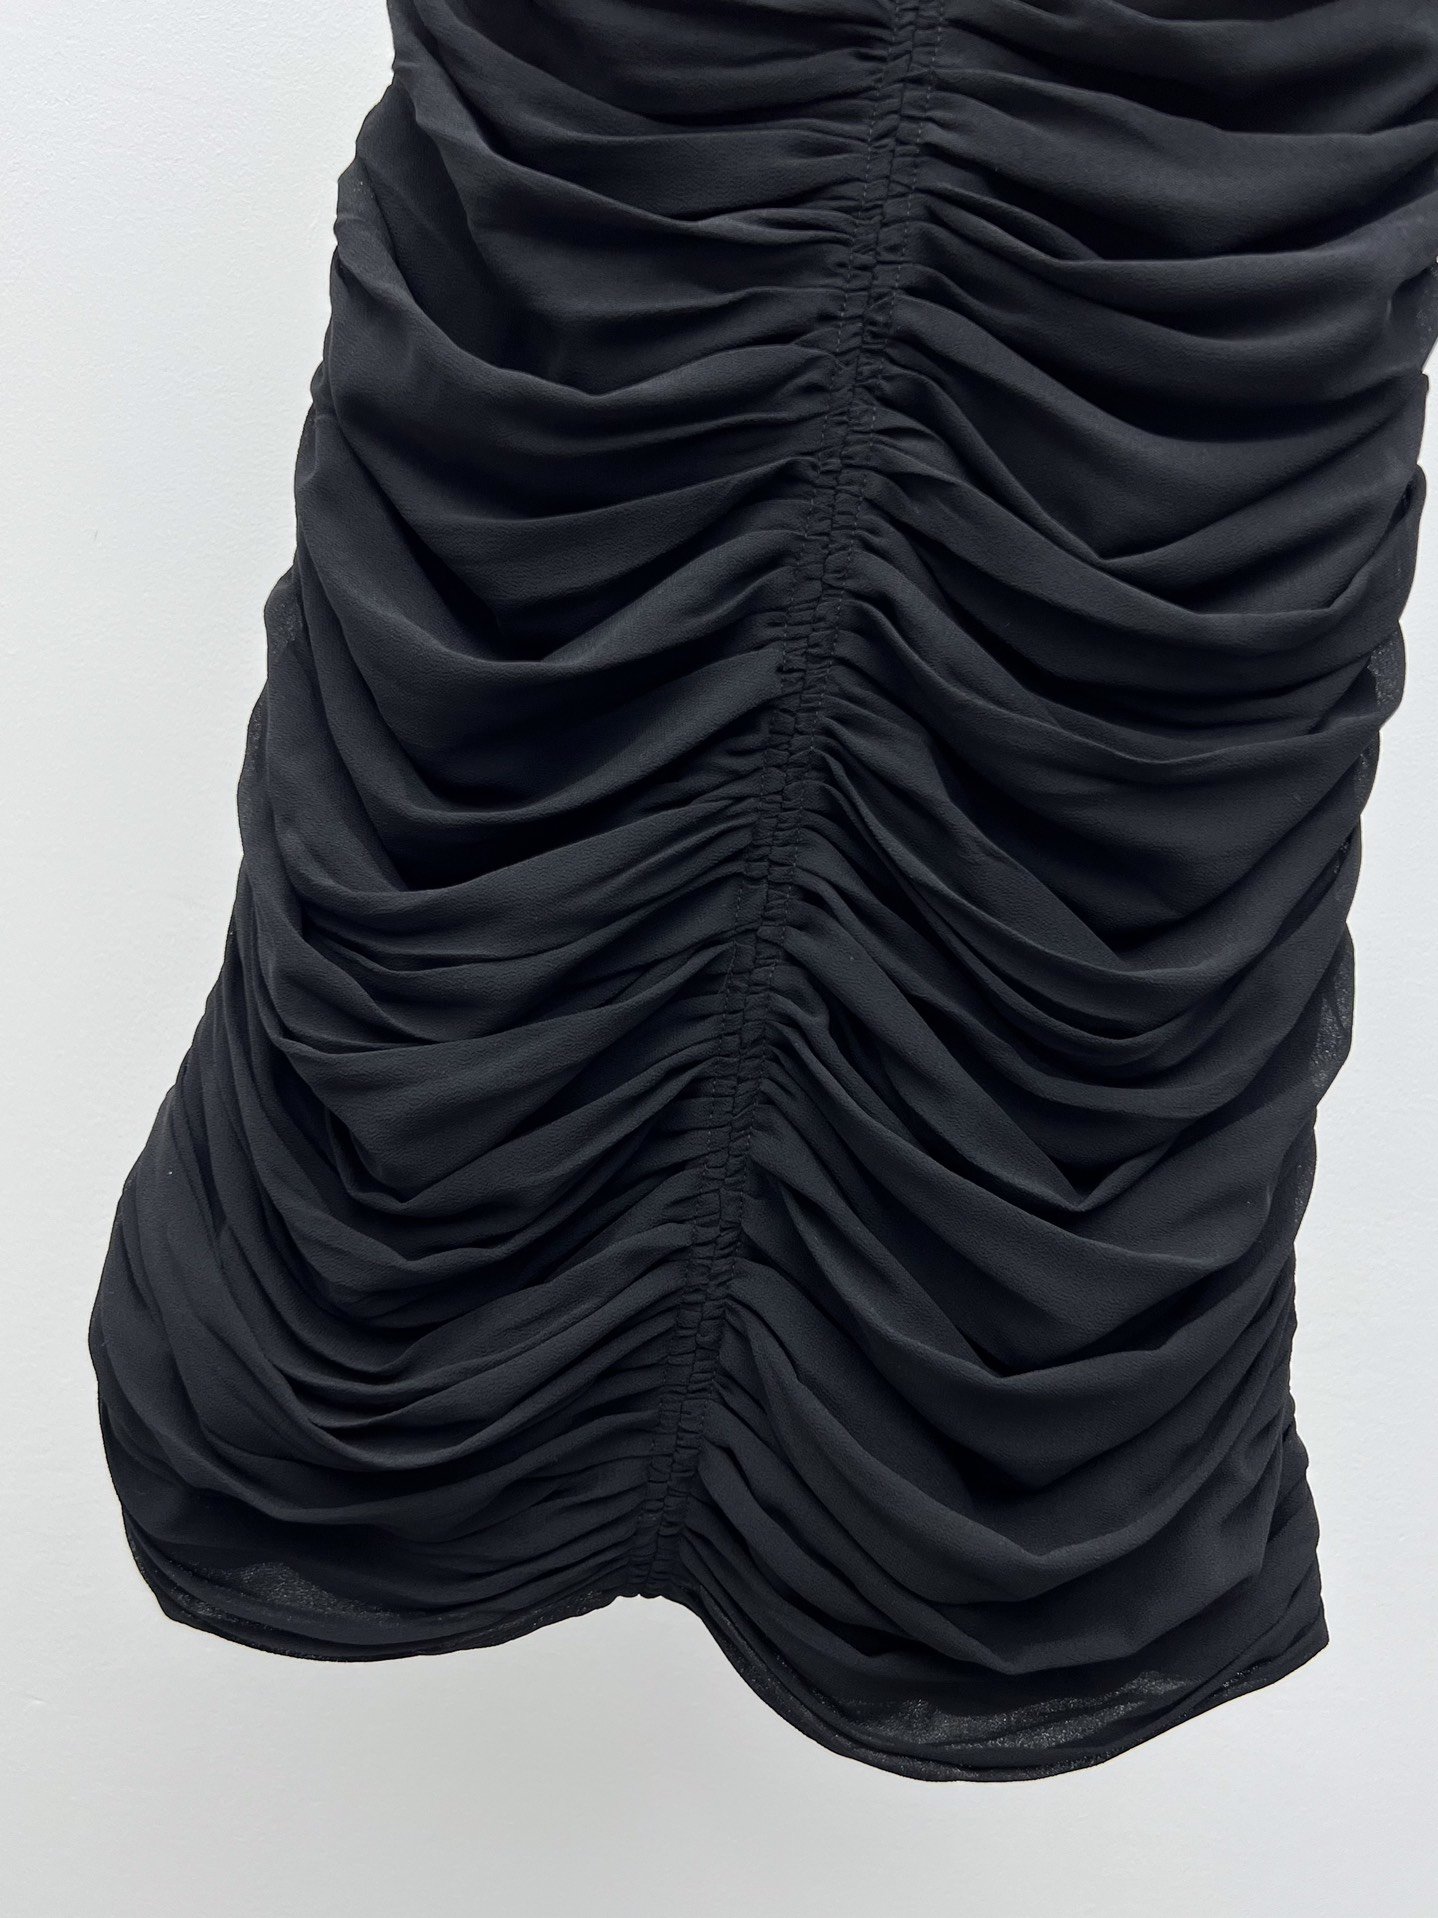 Платье мини черное (шелк 100%) фото 4